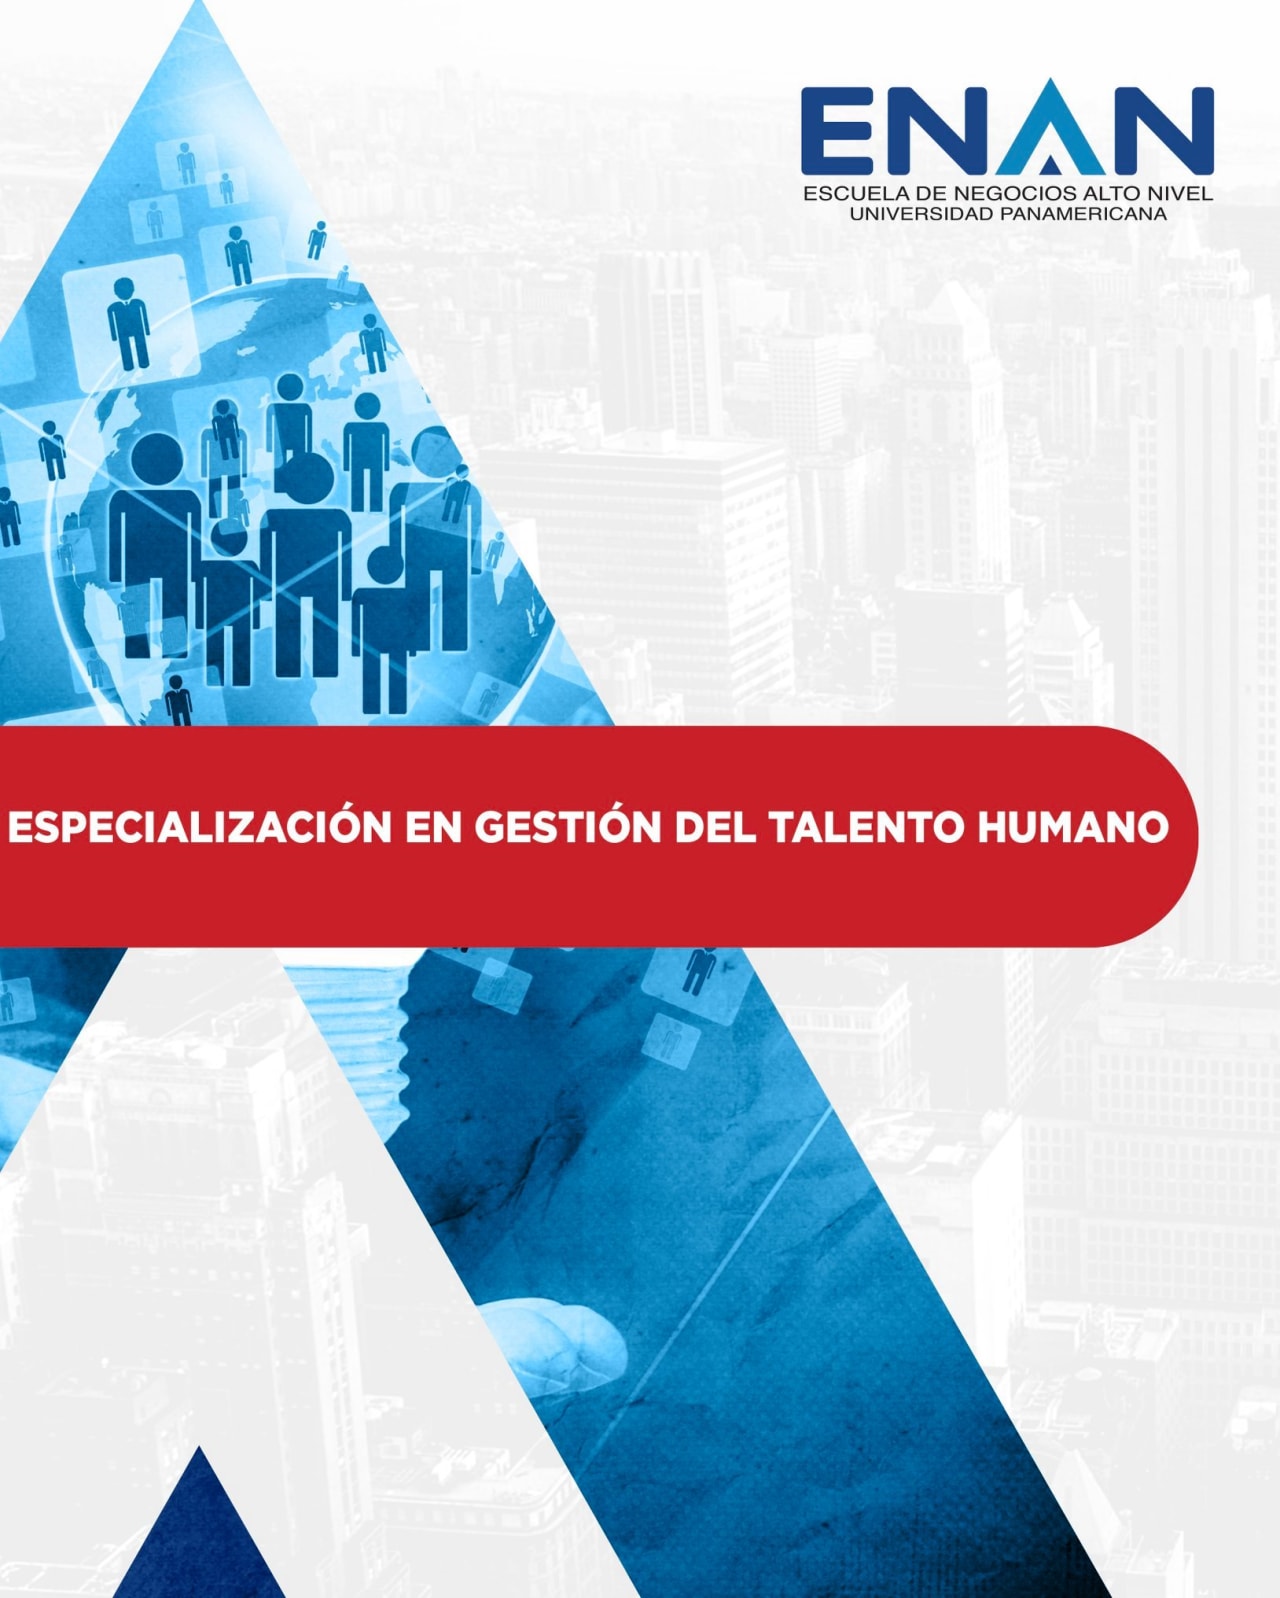 Escuela de Negocios Alto Nivel - Universidad Panamericana de Guatemala Specialisering i Human Talent Management